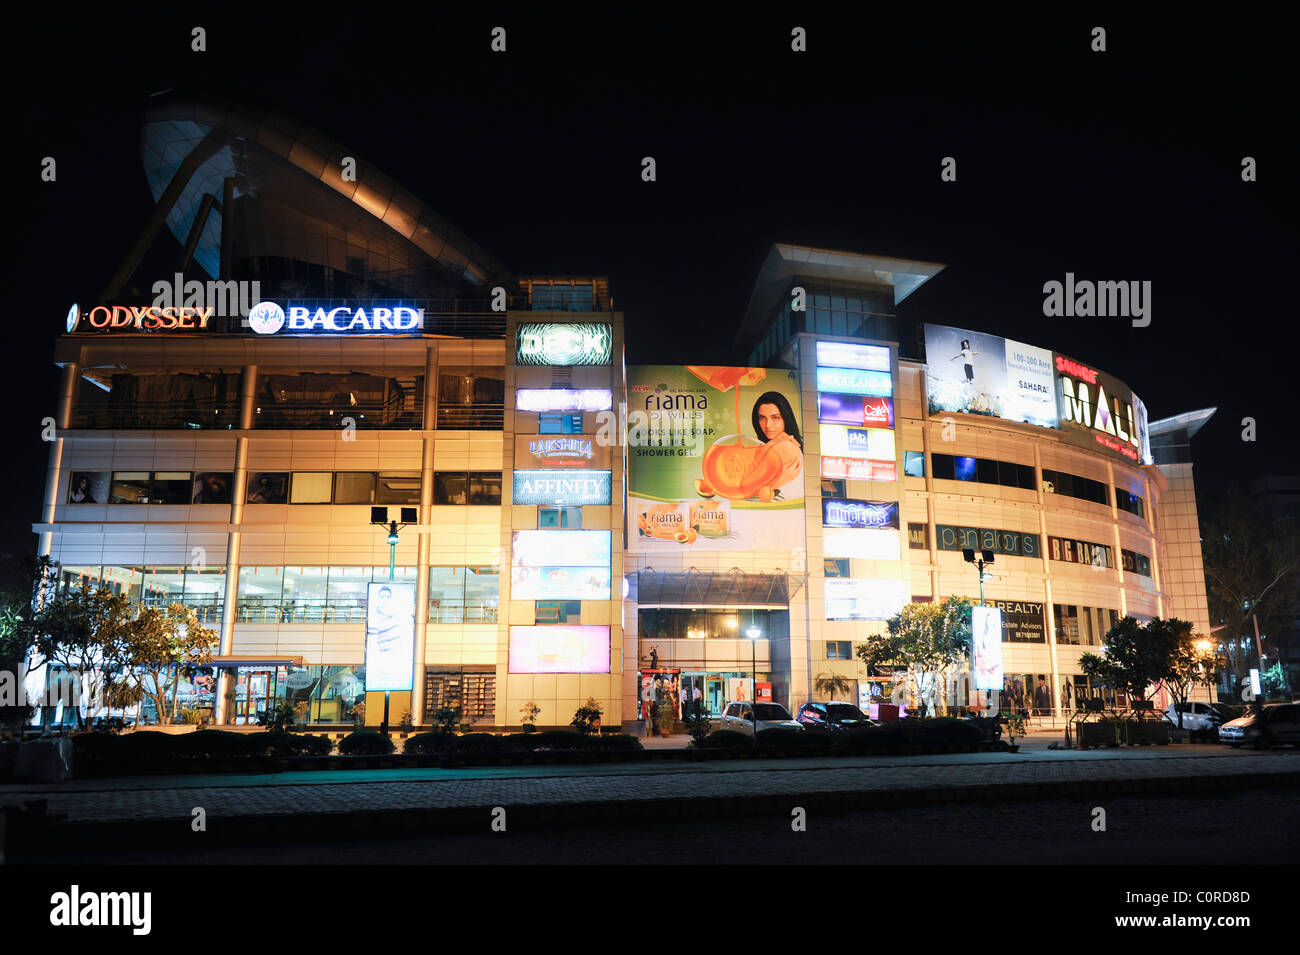 Shopping mall lit up at night, Sahara Mall, MG Road, Gurgaon, Haryana, India Stock Photo